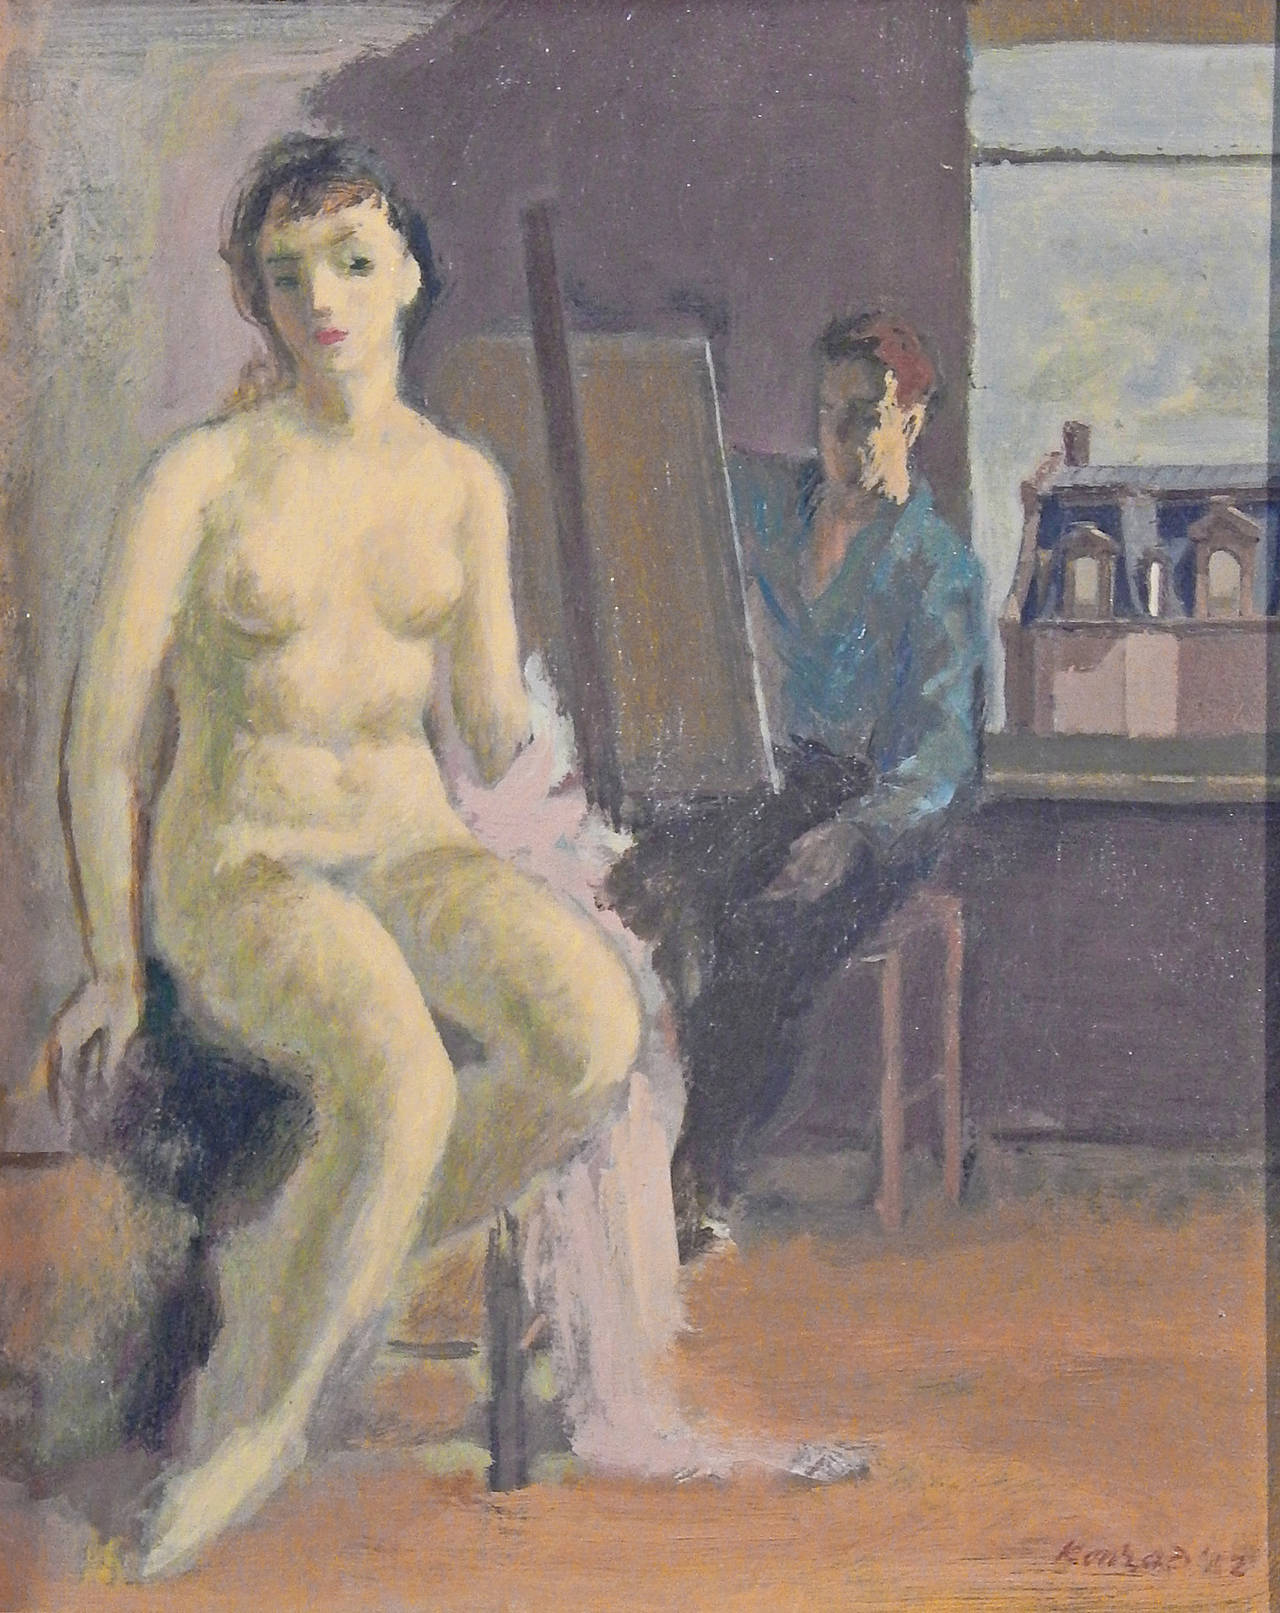 "Künstler und Aktmodell" Gemälde von Adolf Konrad:: 1952